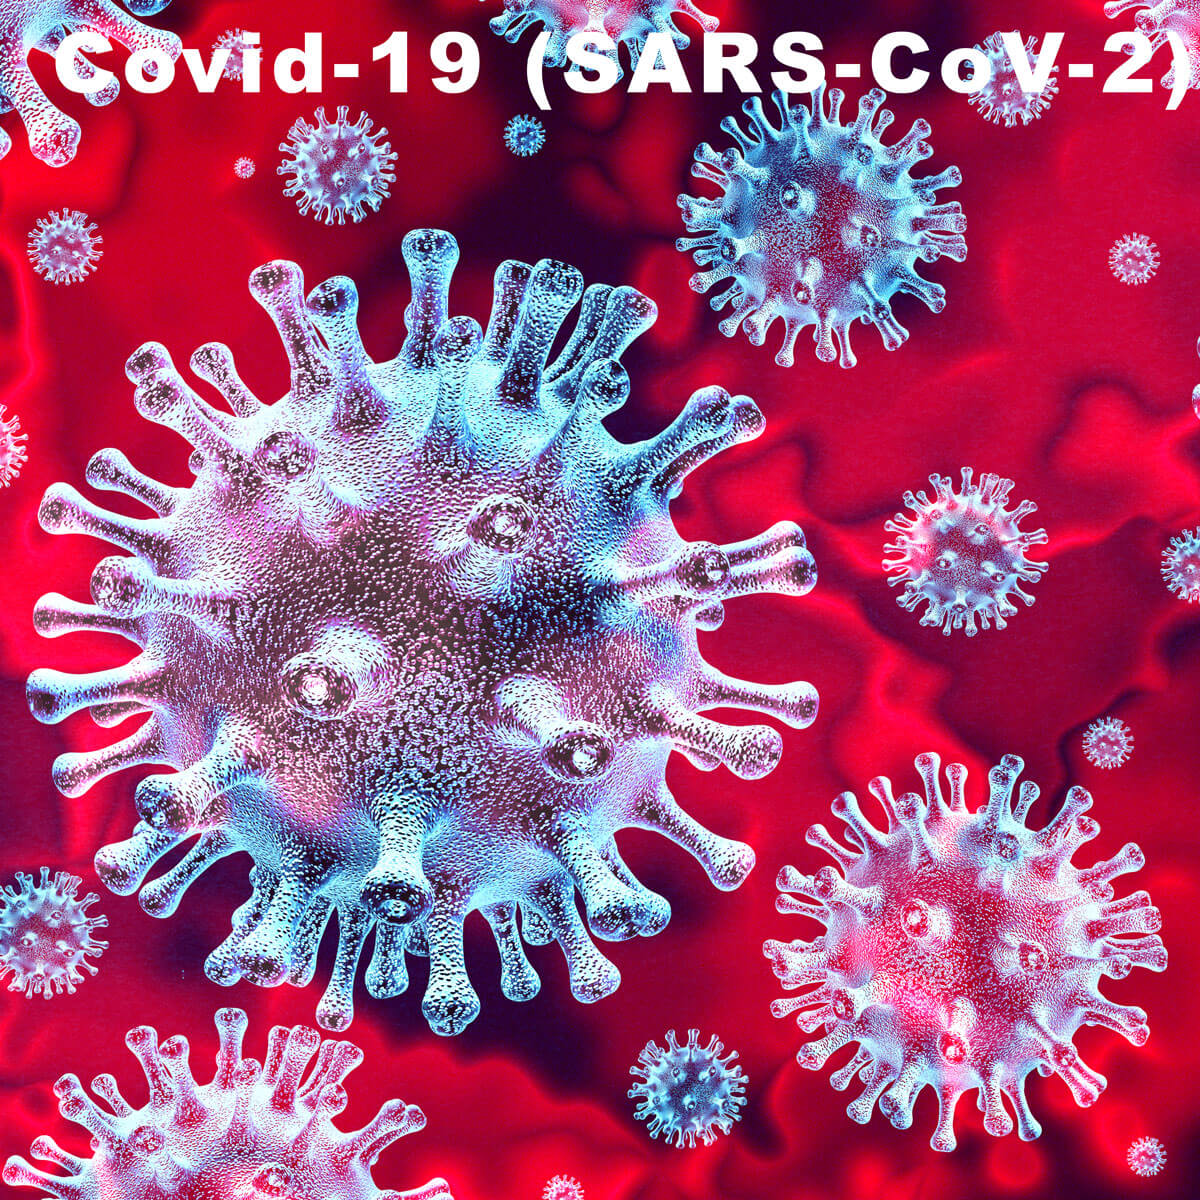 Covid-19 (SARS-CoV-2)